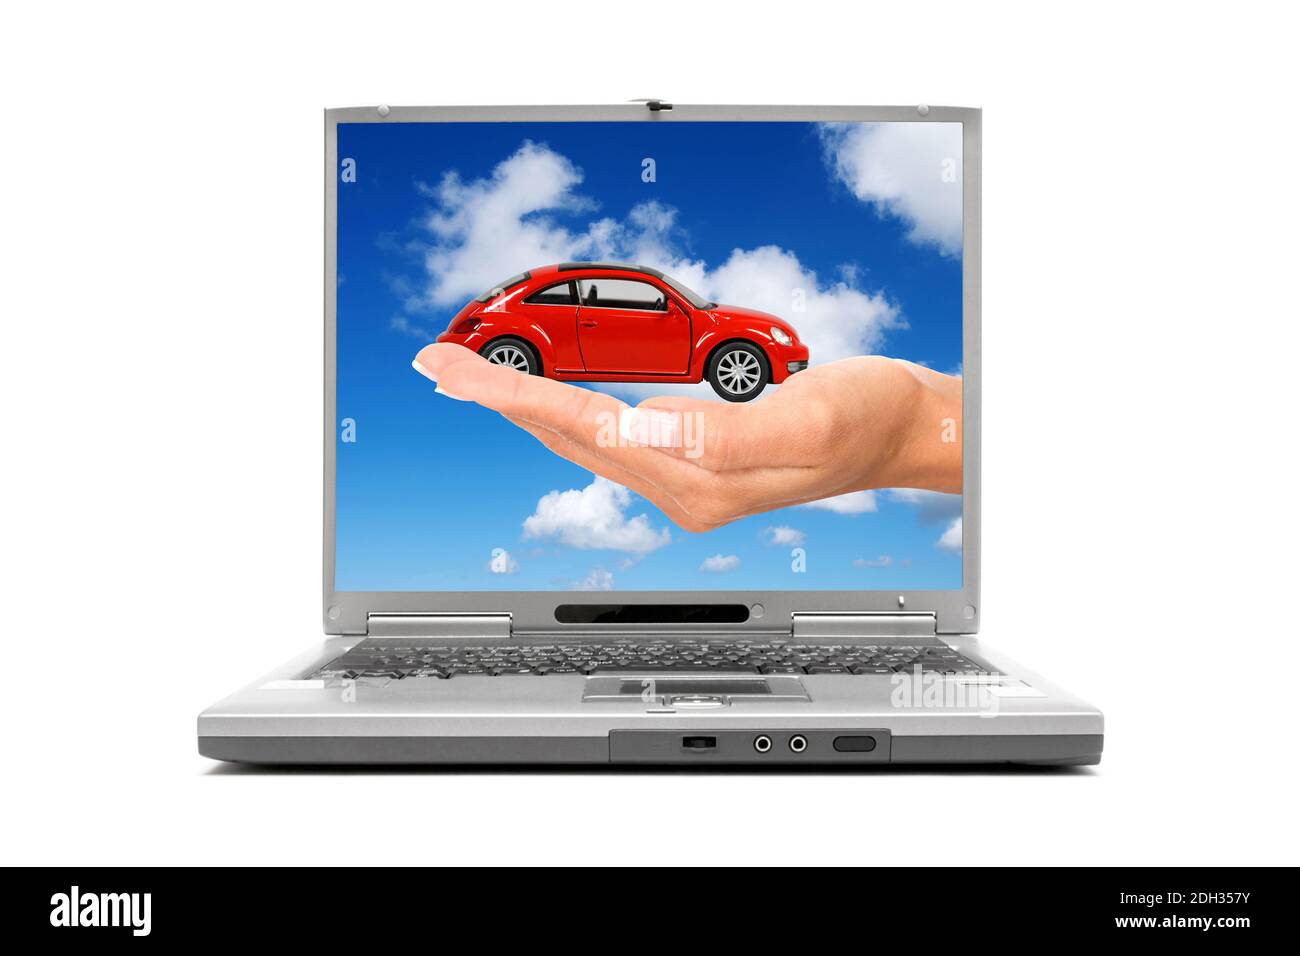 Laptop mano zeigt mit Modellauto Foto Stock